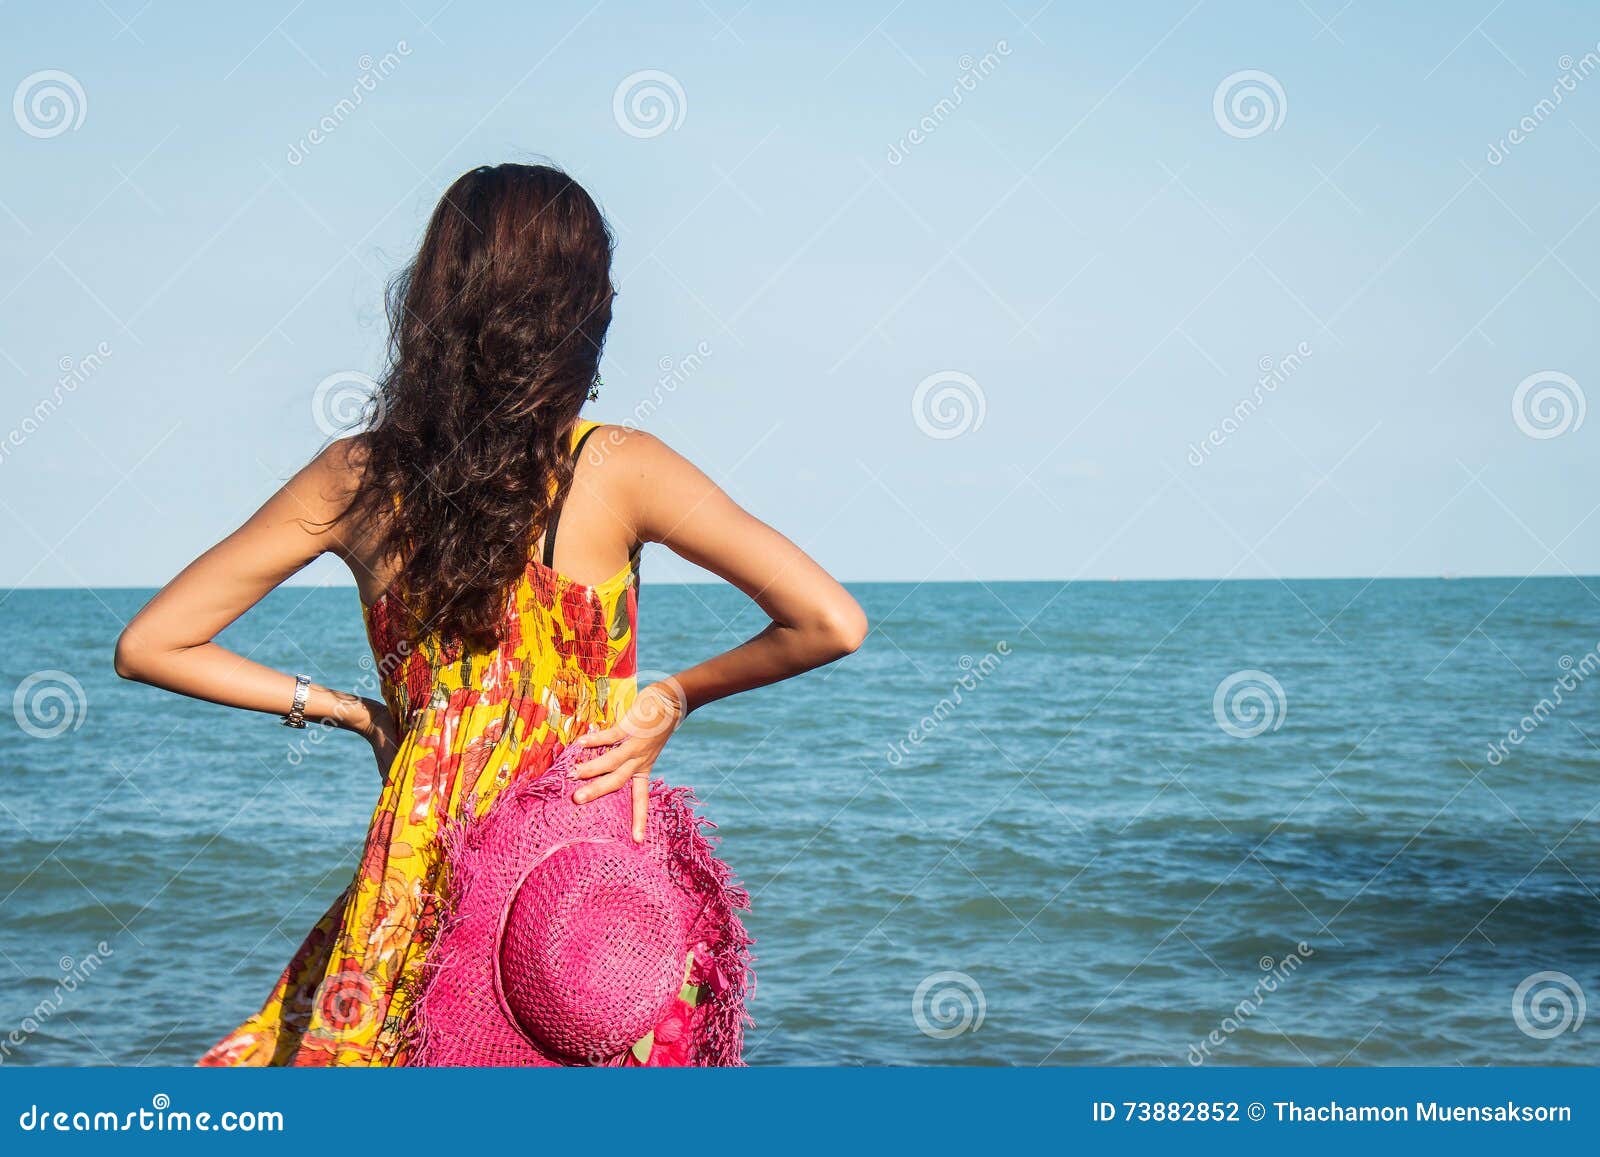 Женщины В Годах На Пляже Фото